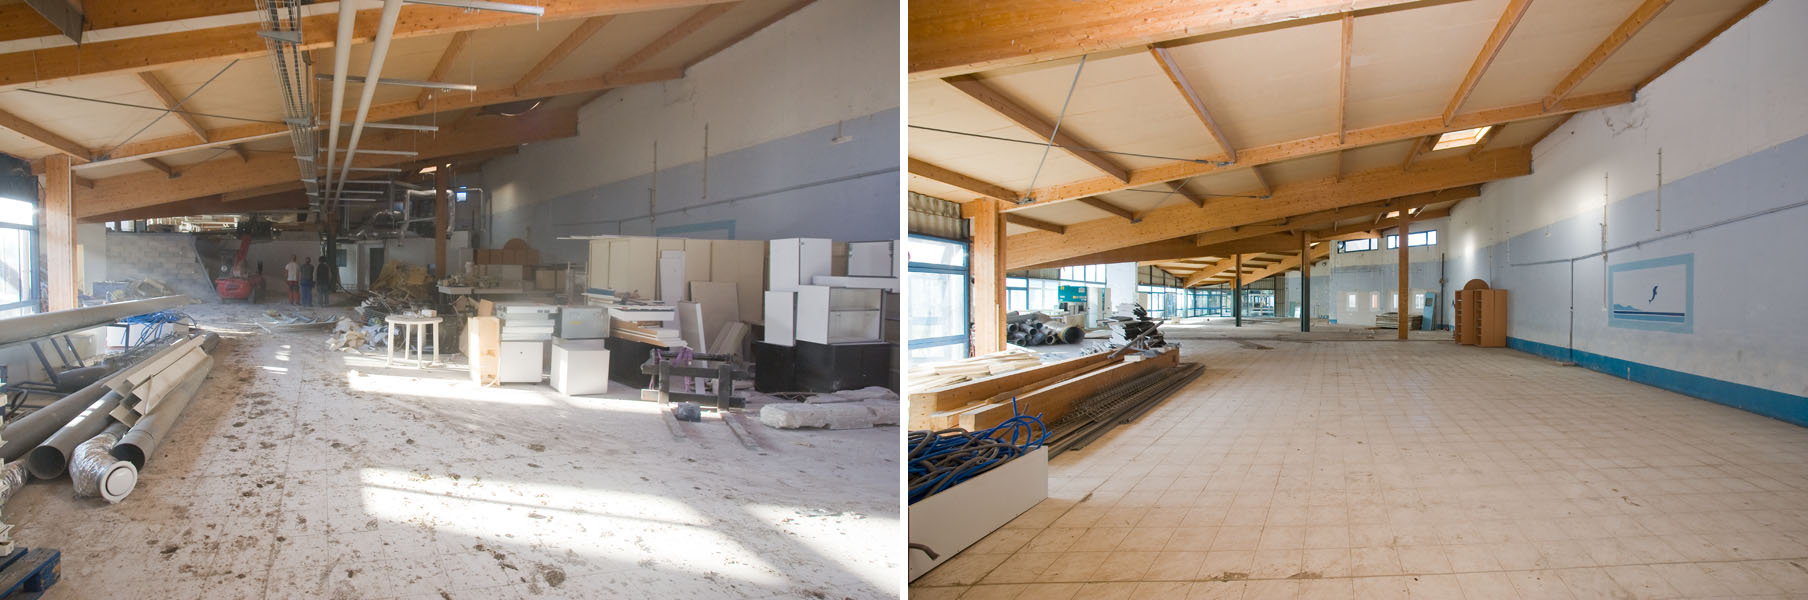 l'intérieur du laboratoire URRMA à Aubagne avant et après curage complet